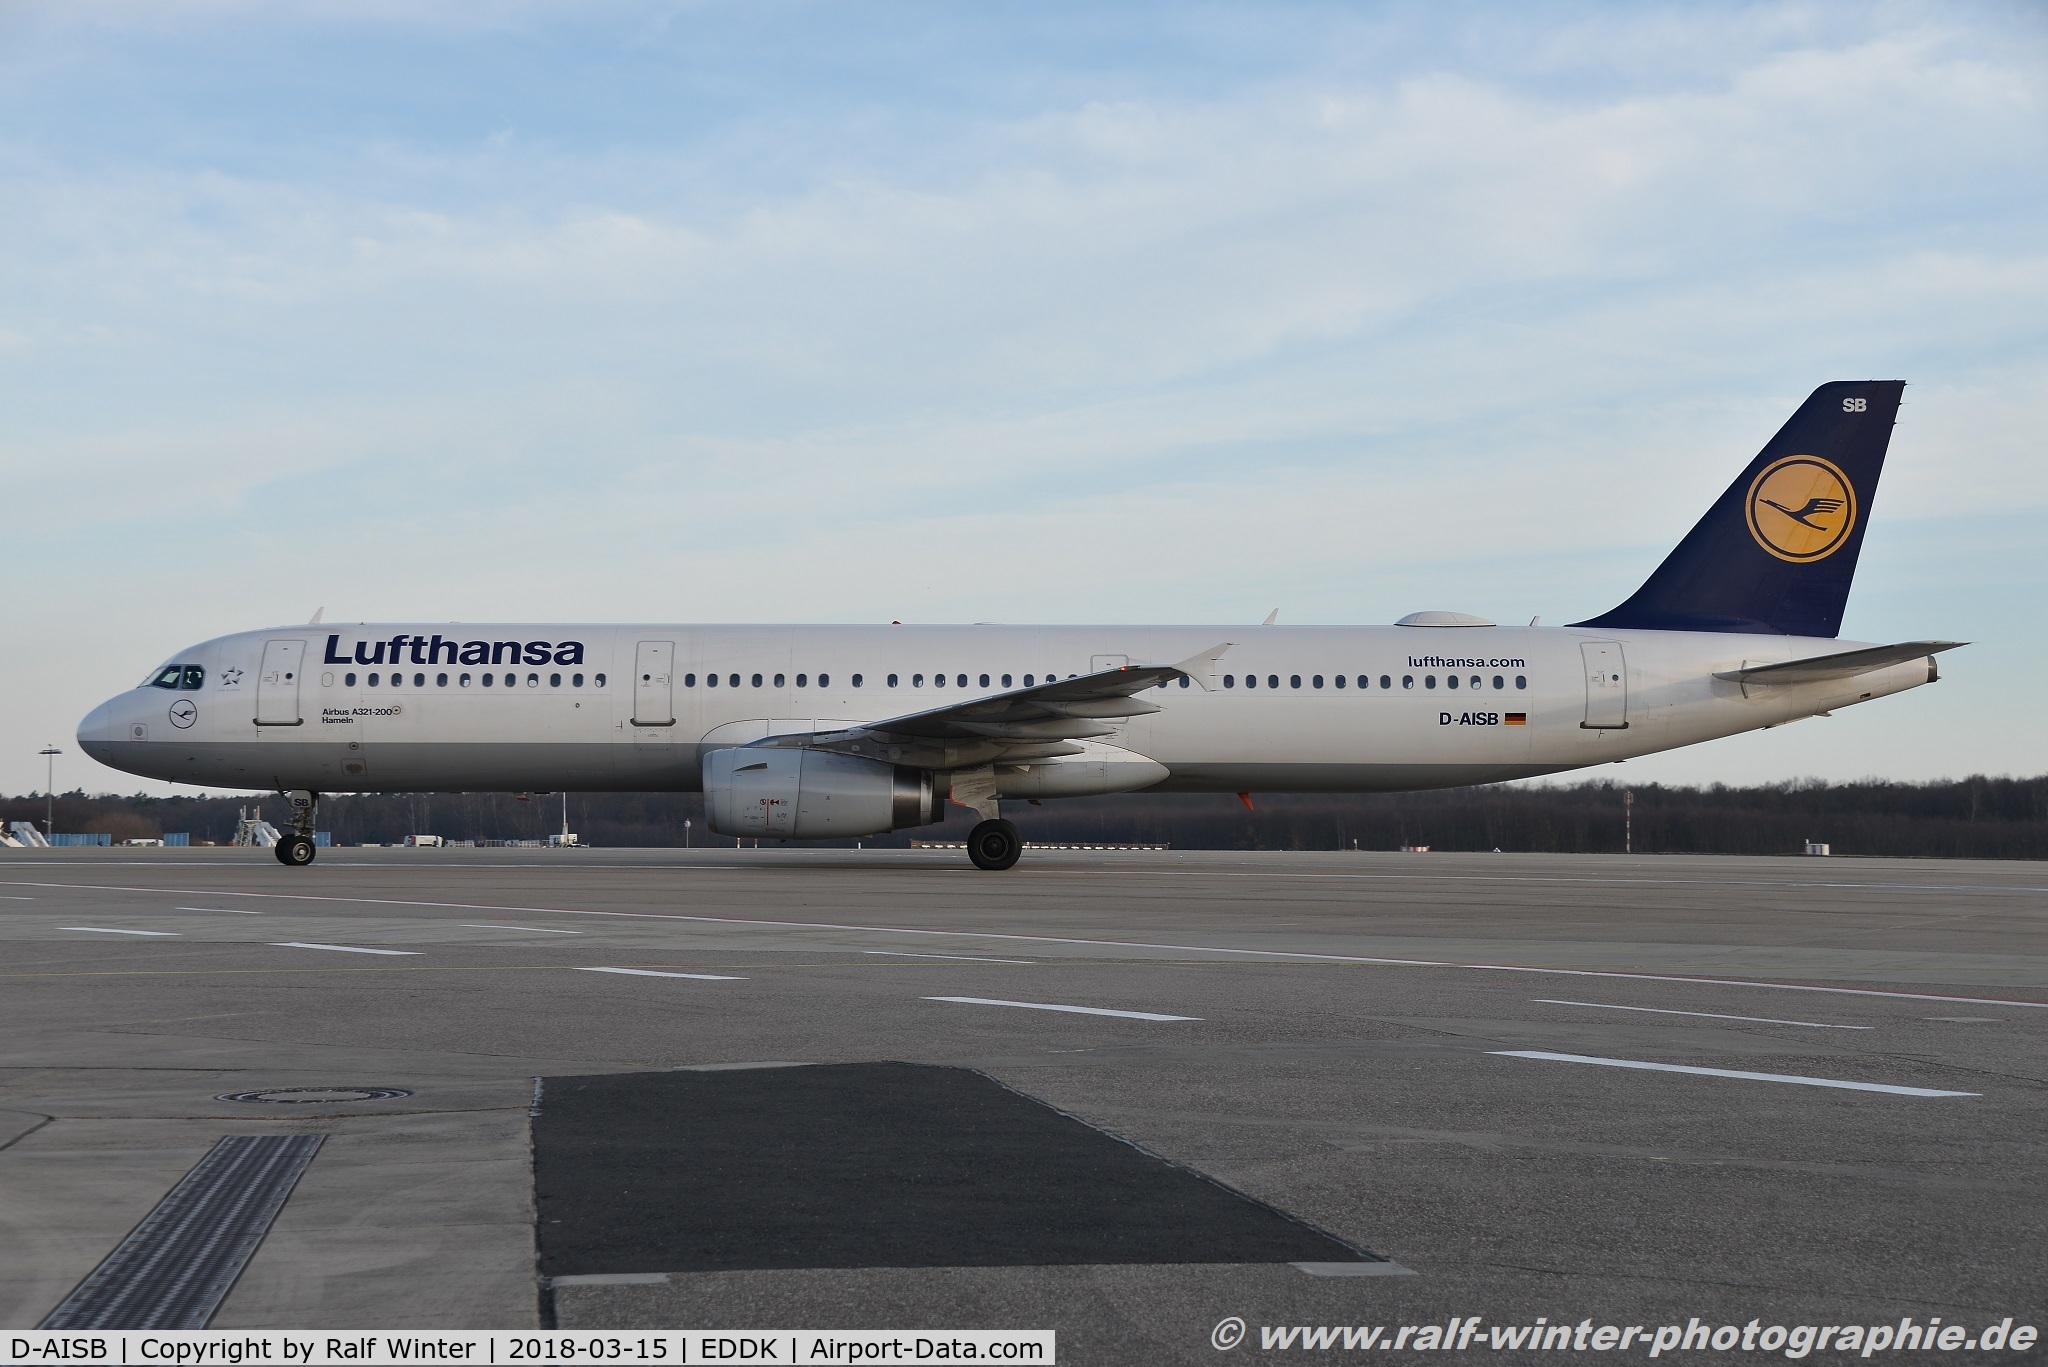 D-AISB, 1999 Airbus A321-231 C/N 1080, Airbus a321-231 - LH DLH Lufthansa 'Hameln' - 1080 - D-AISB - 15.03.2018 - CGN